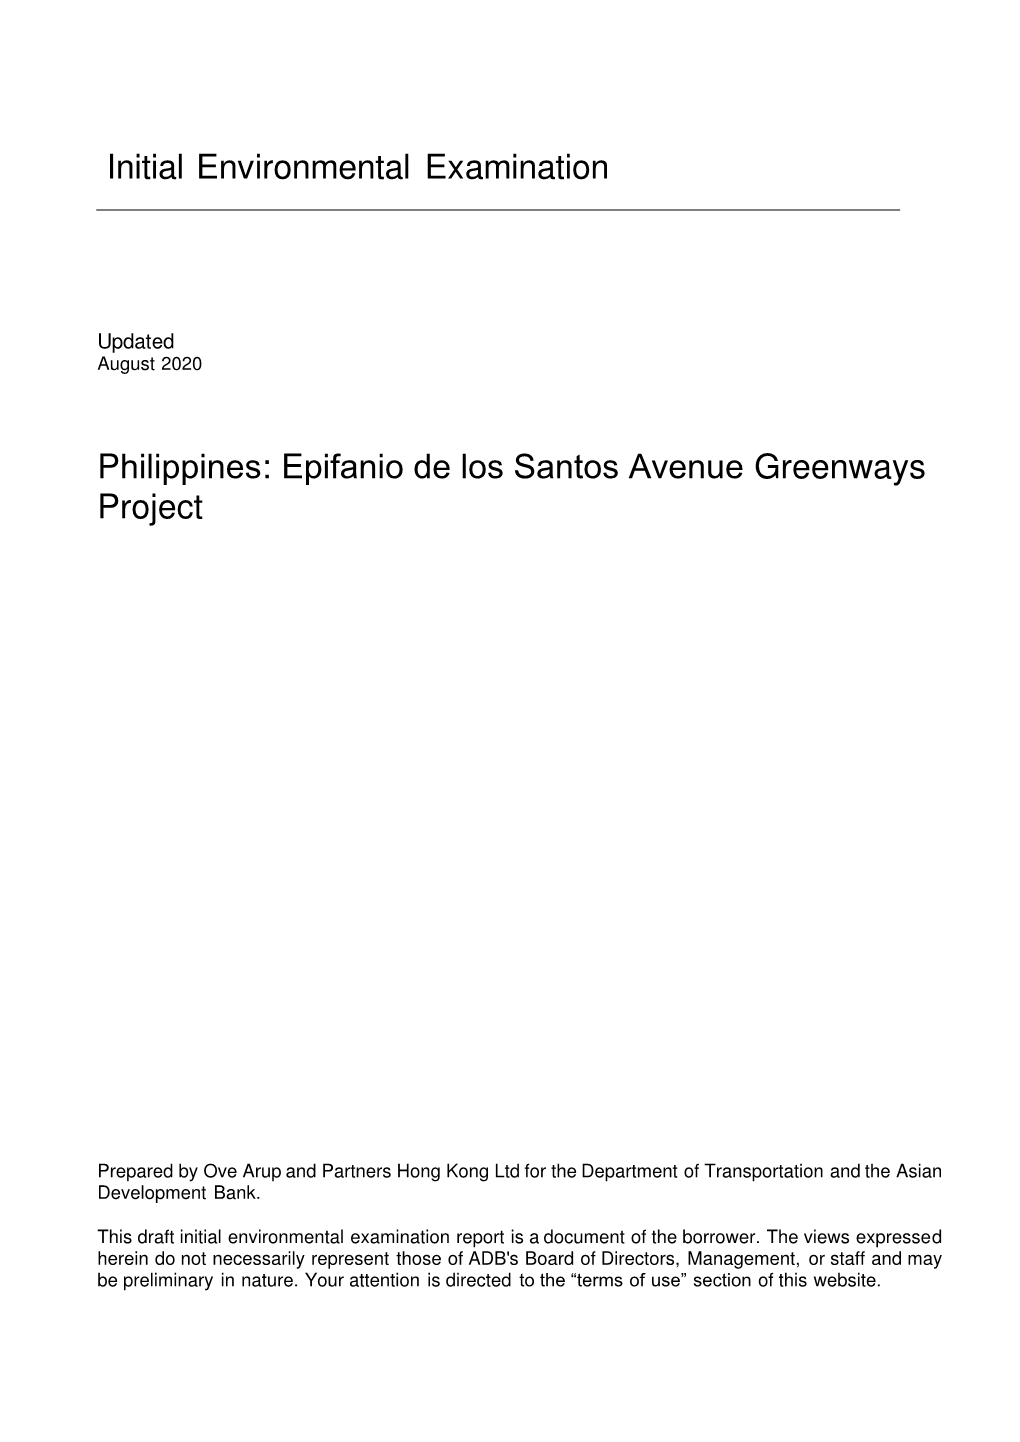 Epifanio De Los Santos Avenue Greenways Project: Initial